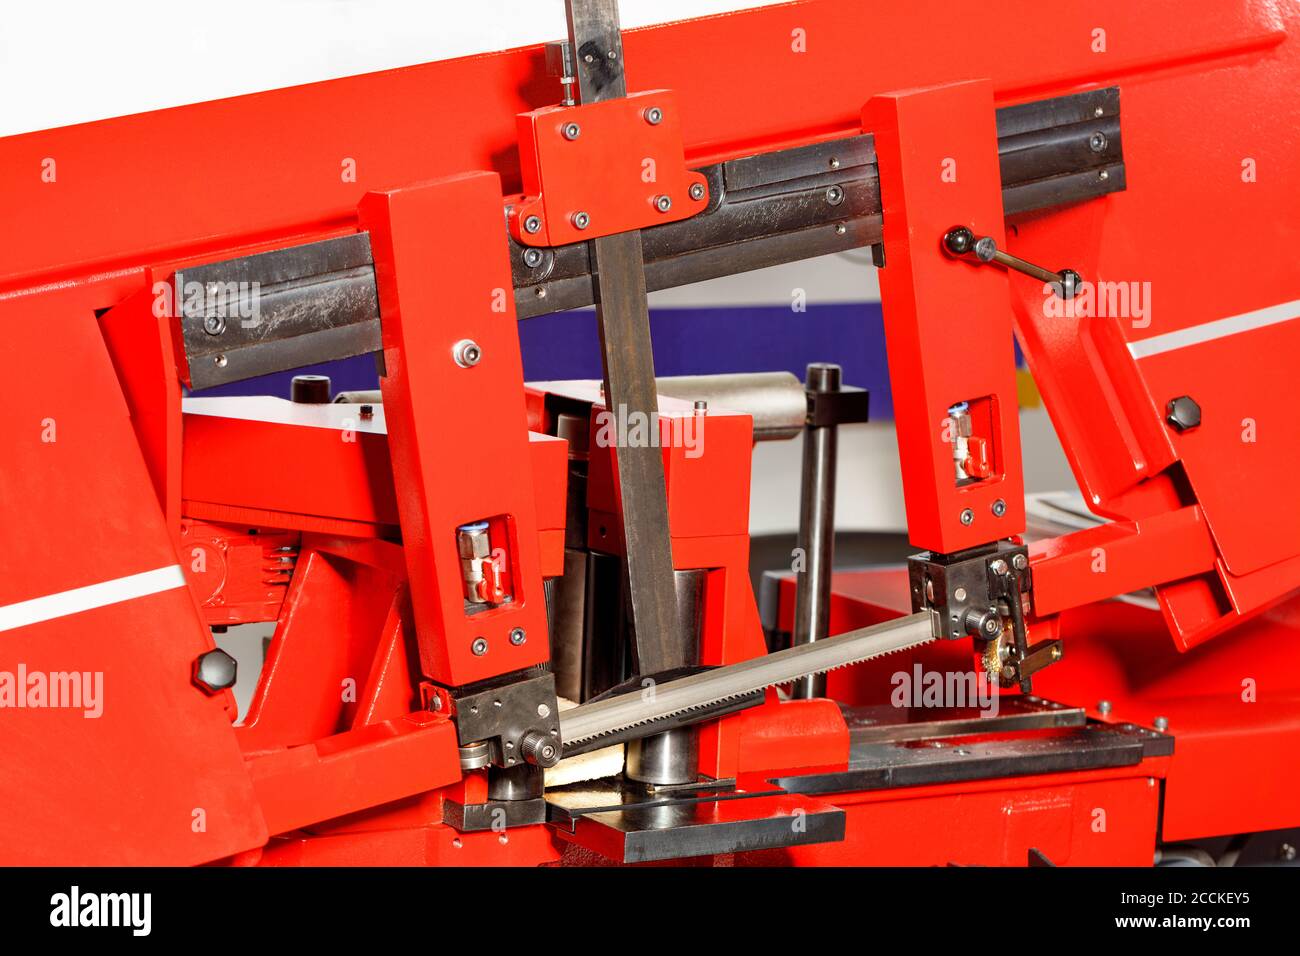 Los dientes afilados de la sierra de banda en la moderna máquina de trabajo  de metal rojo garantizan una alta precisión de corte gracias a la línea de  ajuste. Primer plano Fotografía